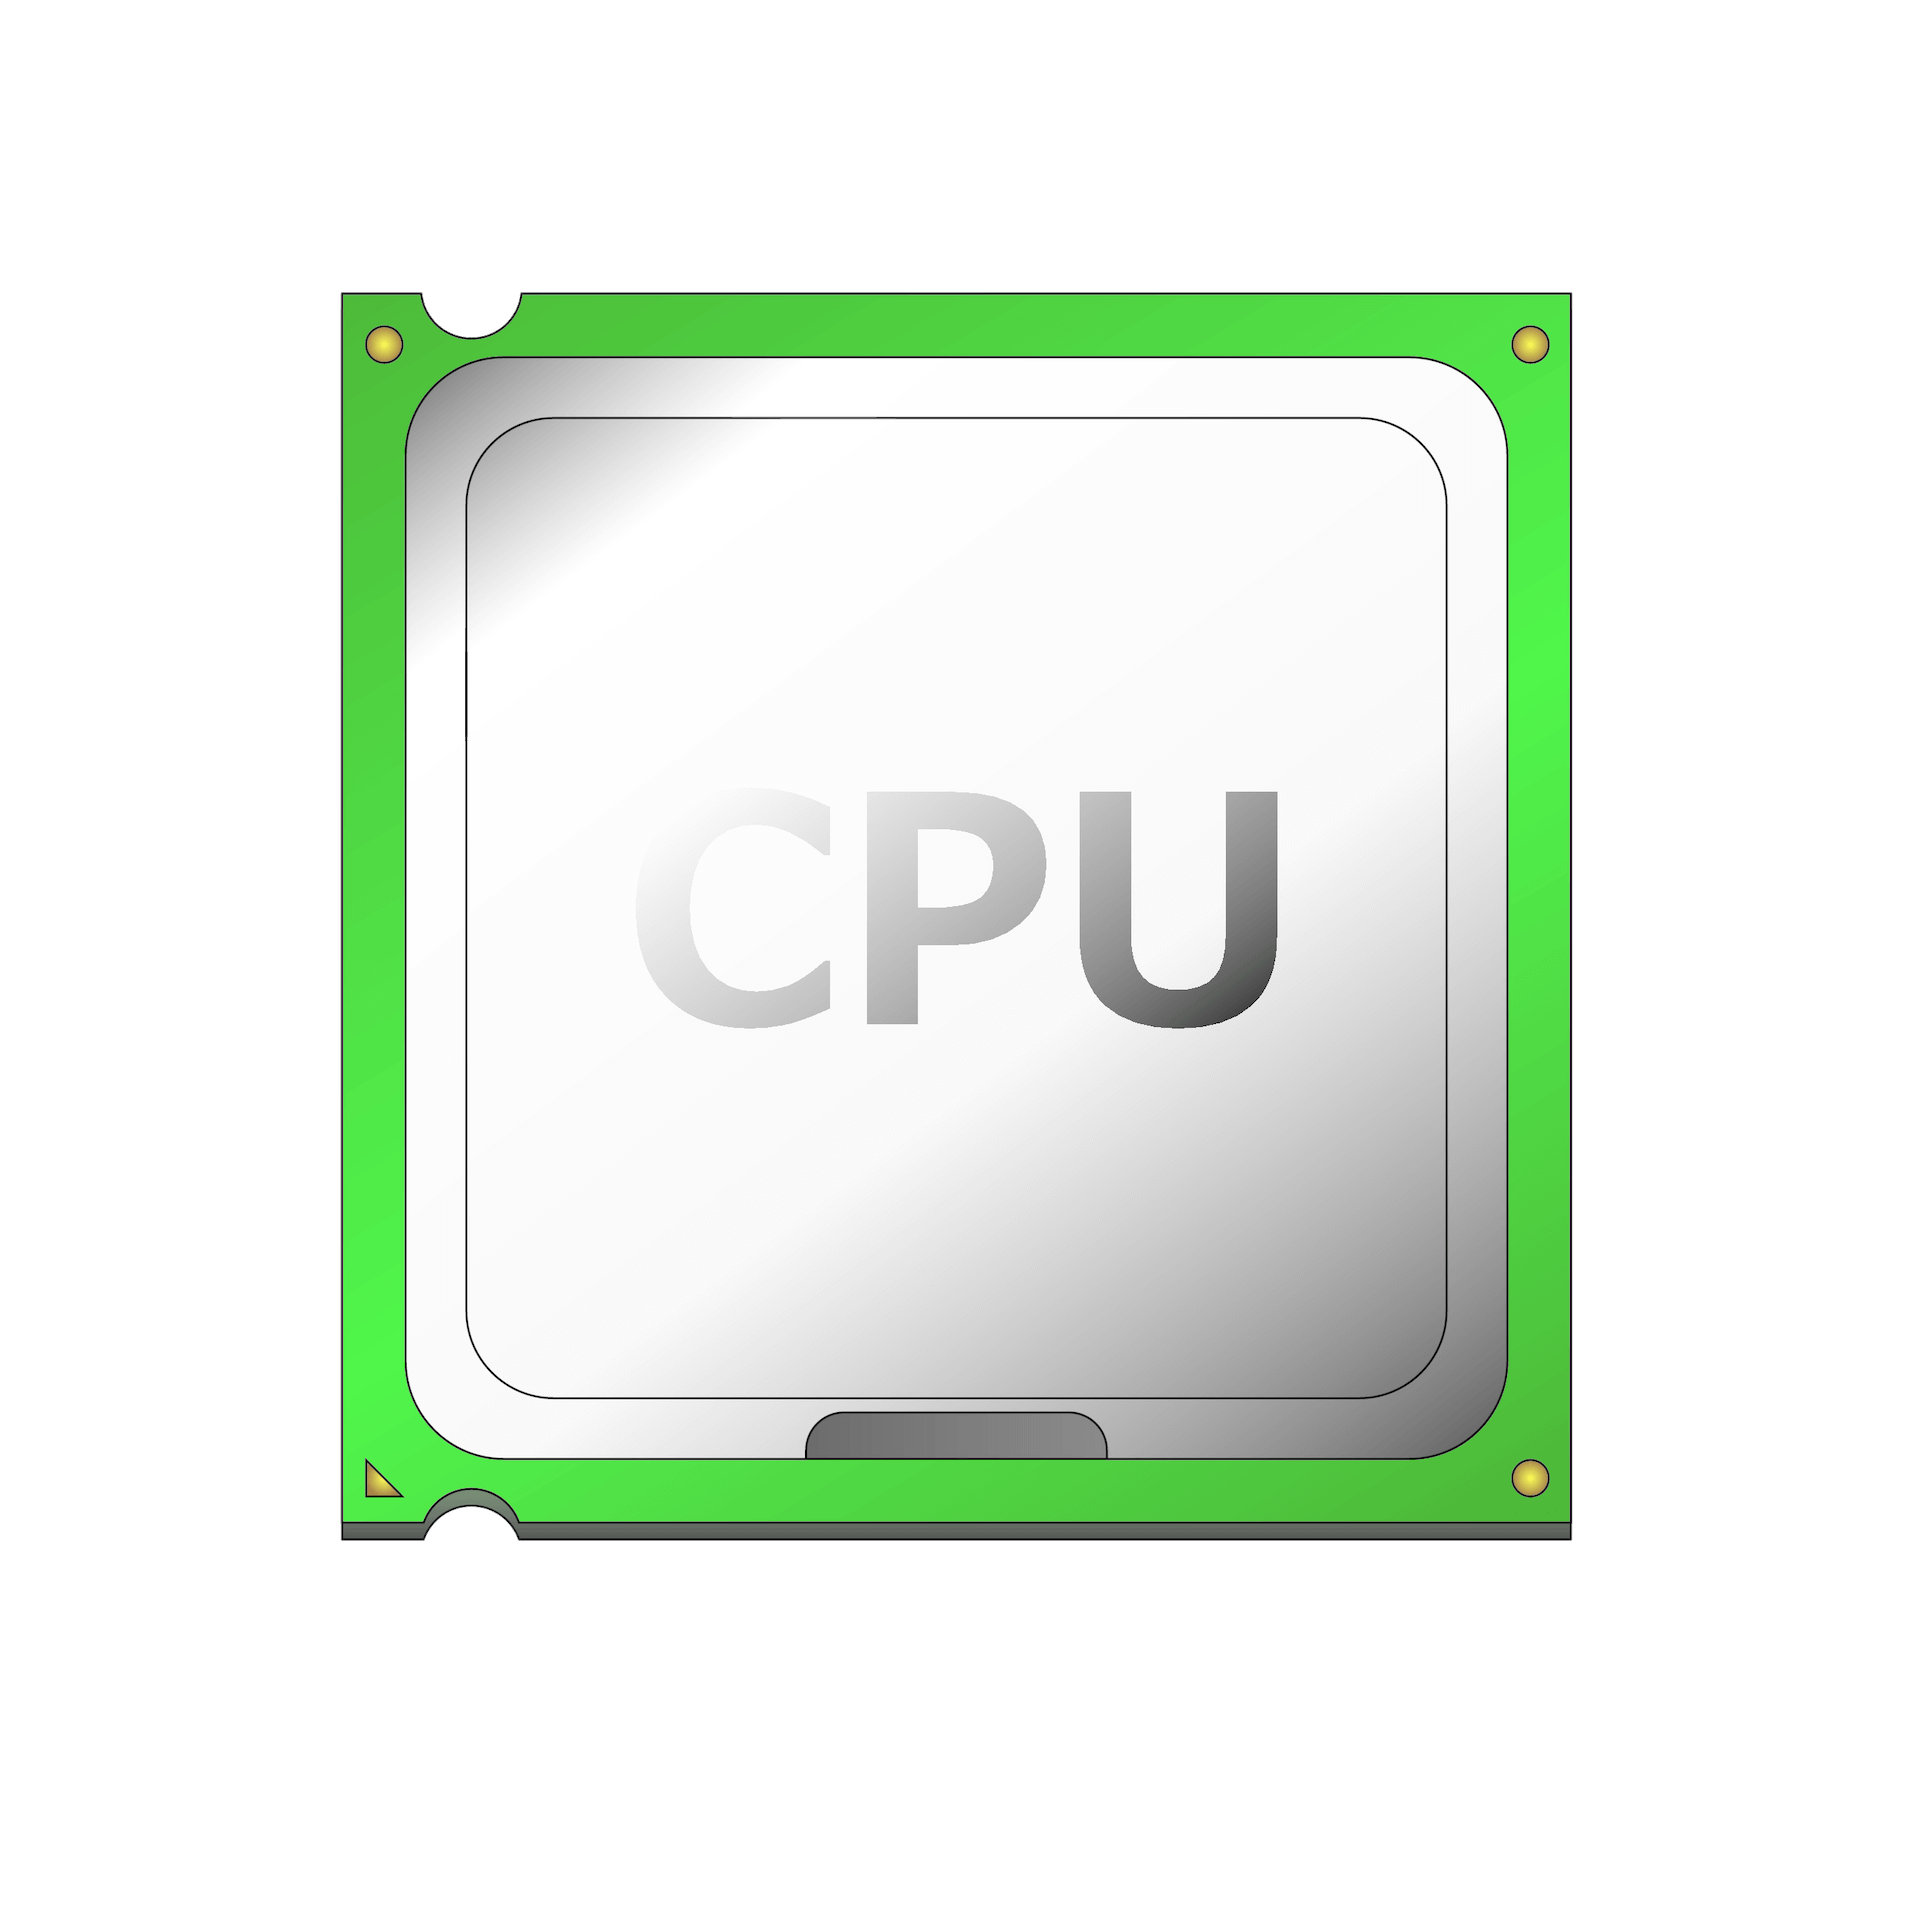 CPU 成為現代網站速度的瓶頸! CPU 為何影響網站速度?